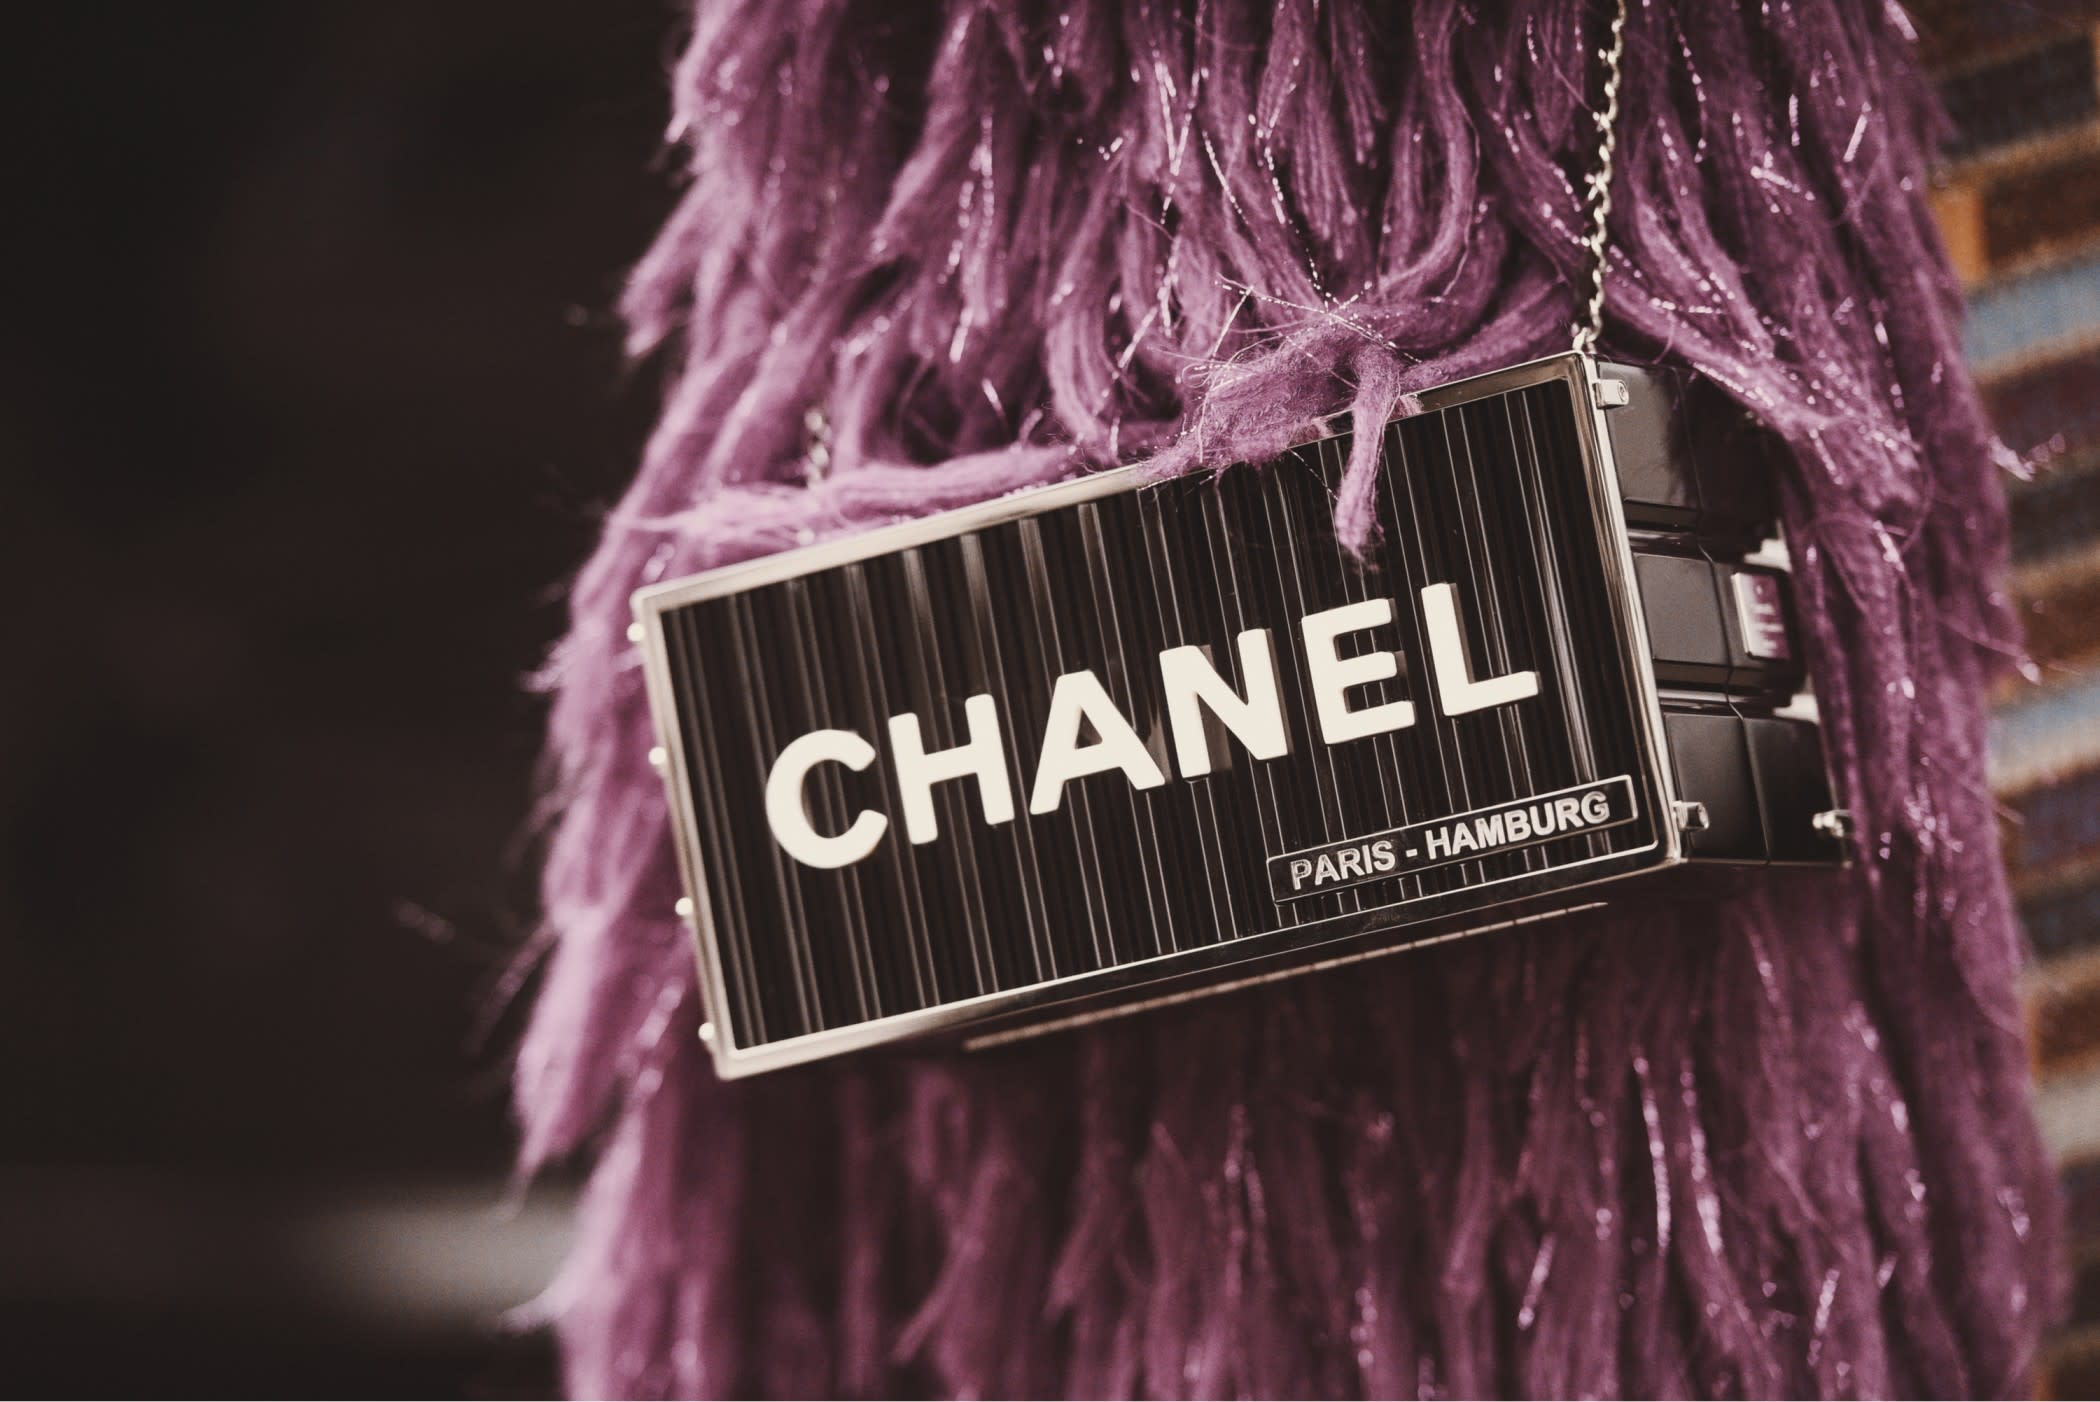 Coco Chanel: A glimpse Into the Marketing Journey